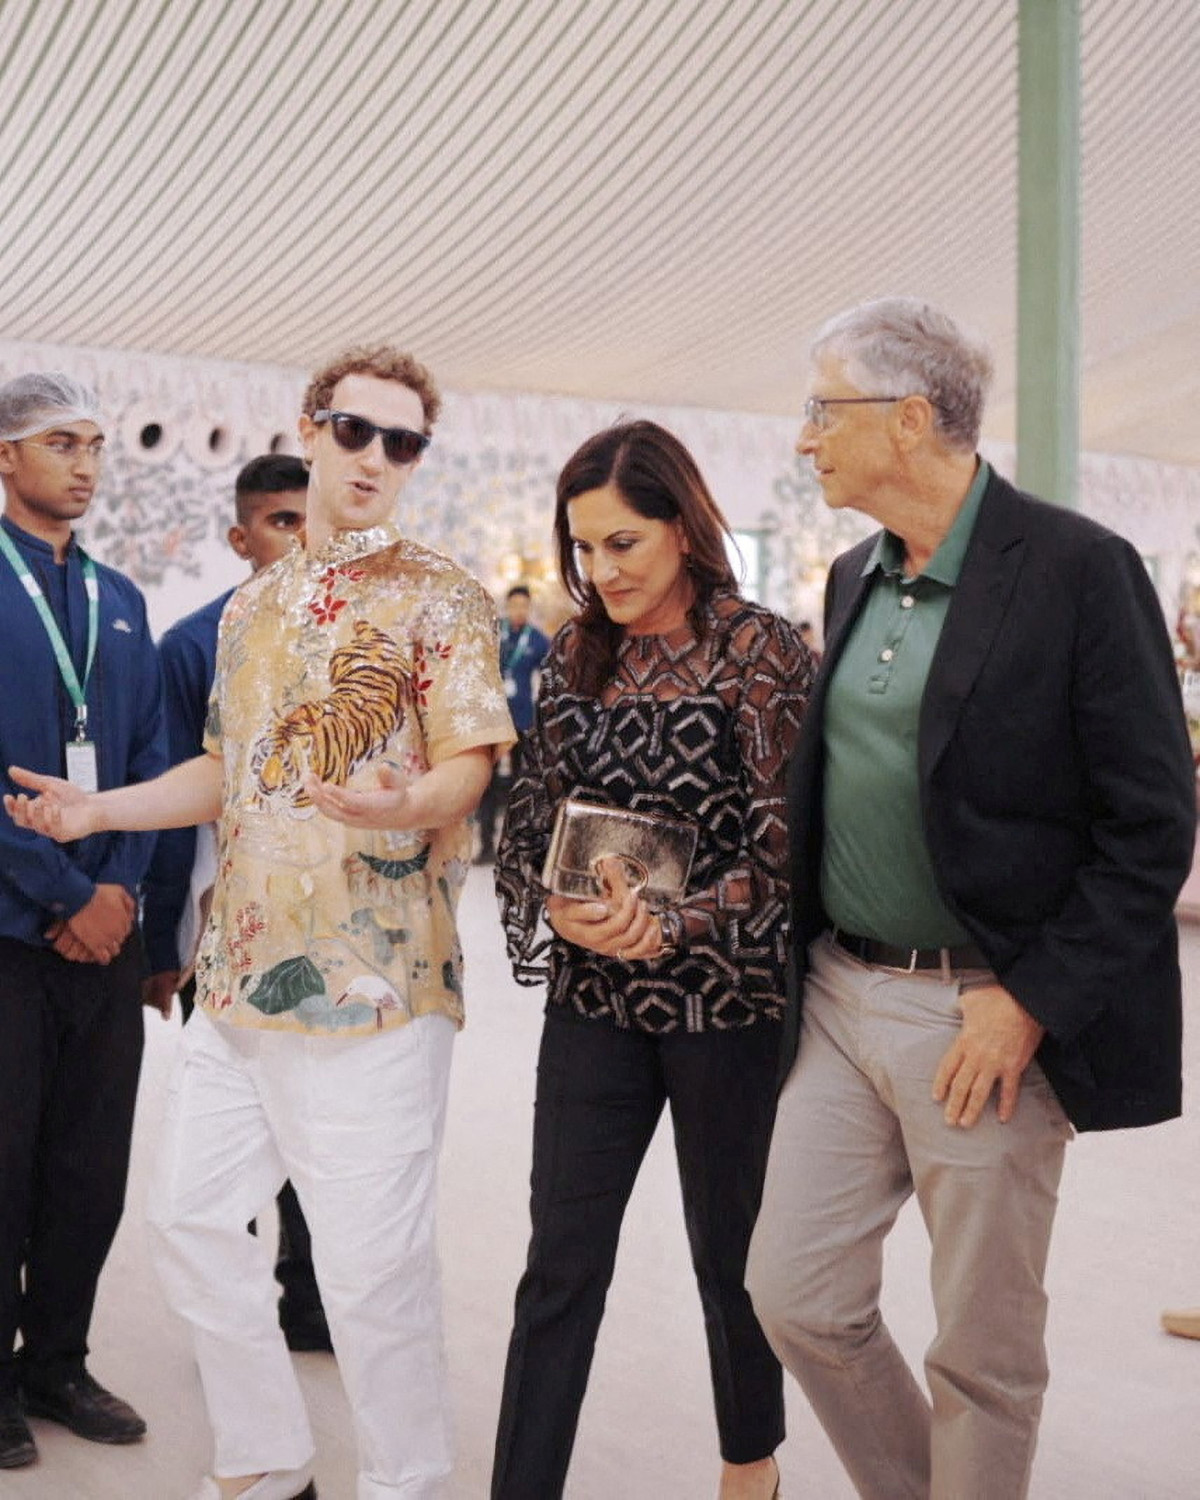 Генеральный директор Meta Марк Цукерберг разговаривает с Биллом Гейтсом и Полой Херд во время предсвадебных торжеств Ананта Амбани и Радики Мерчант, в Джамнагаре, штат Гуджарат, Индия, 2 марта 2024 года. Фото: Reuters